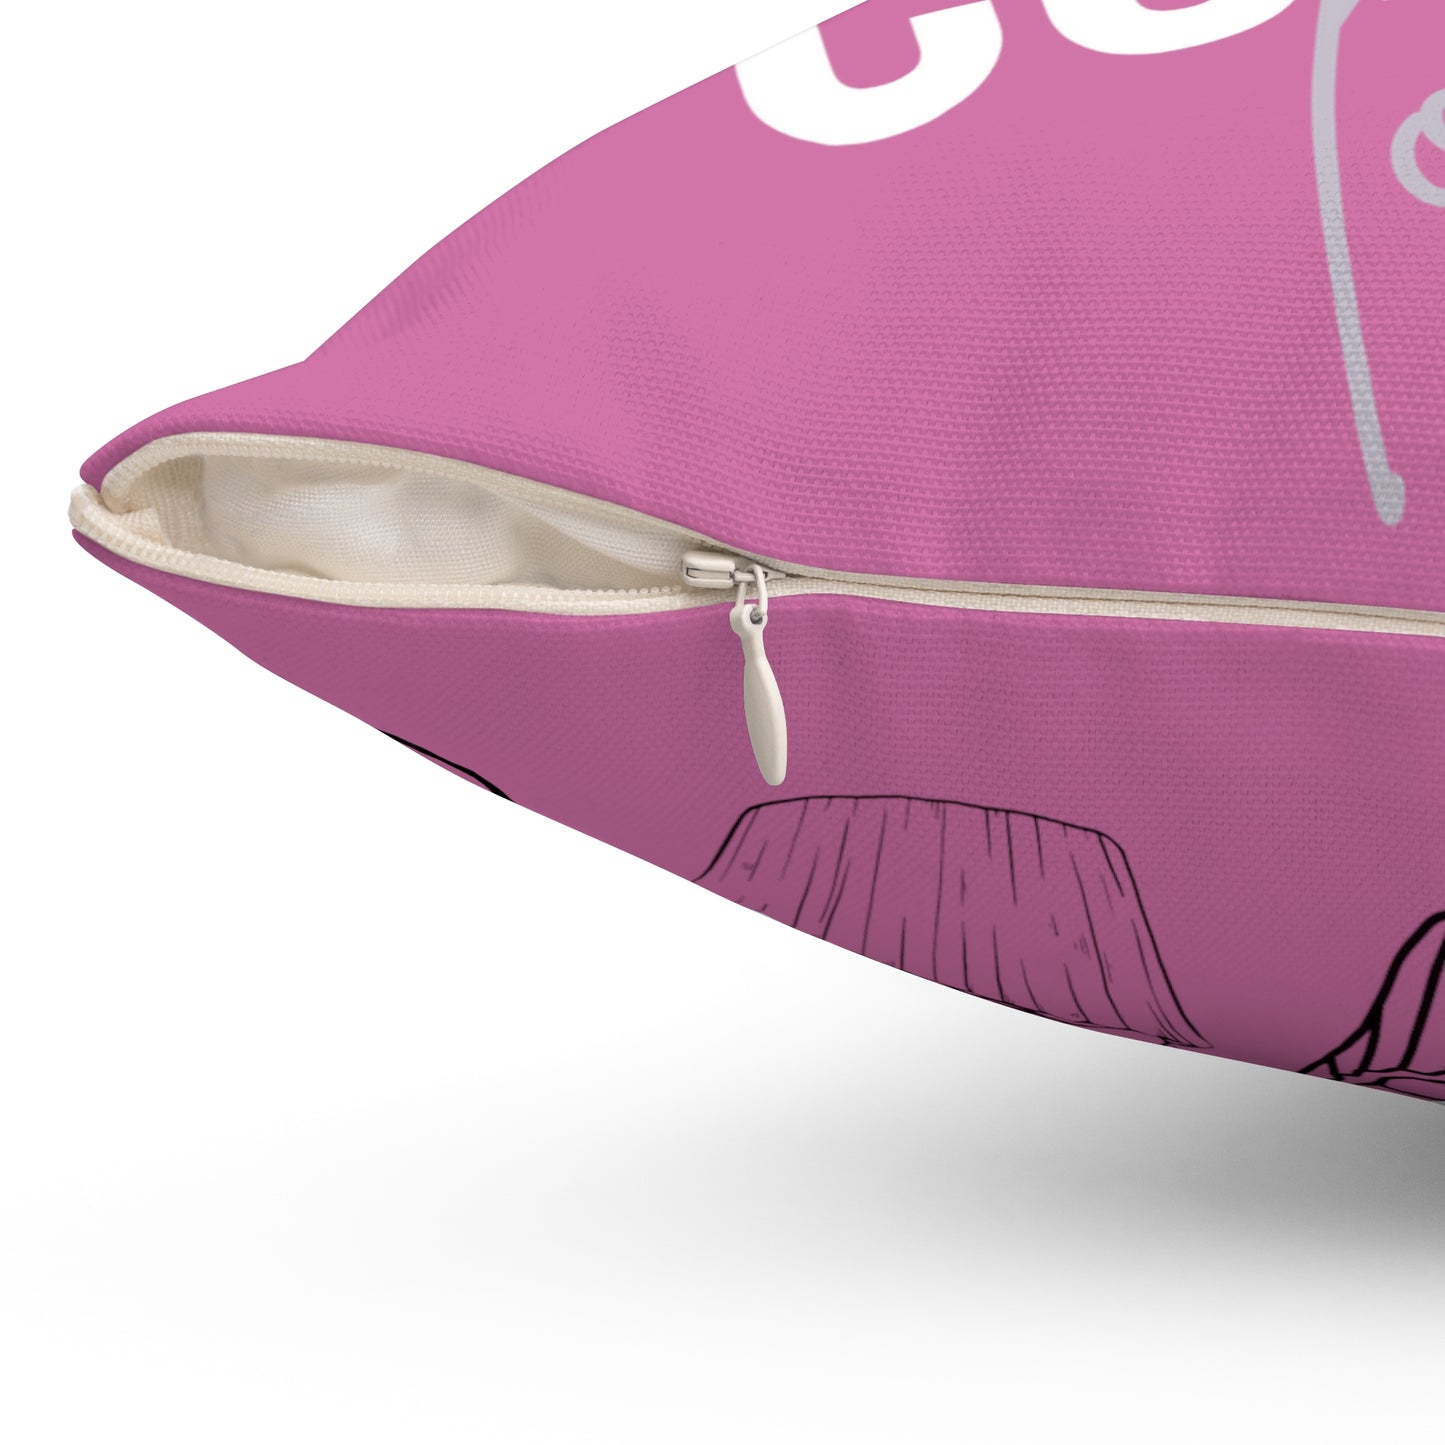 Cupcake Lover (Pink): Spun Polyester Square Pillow